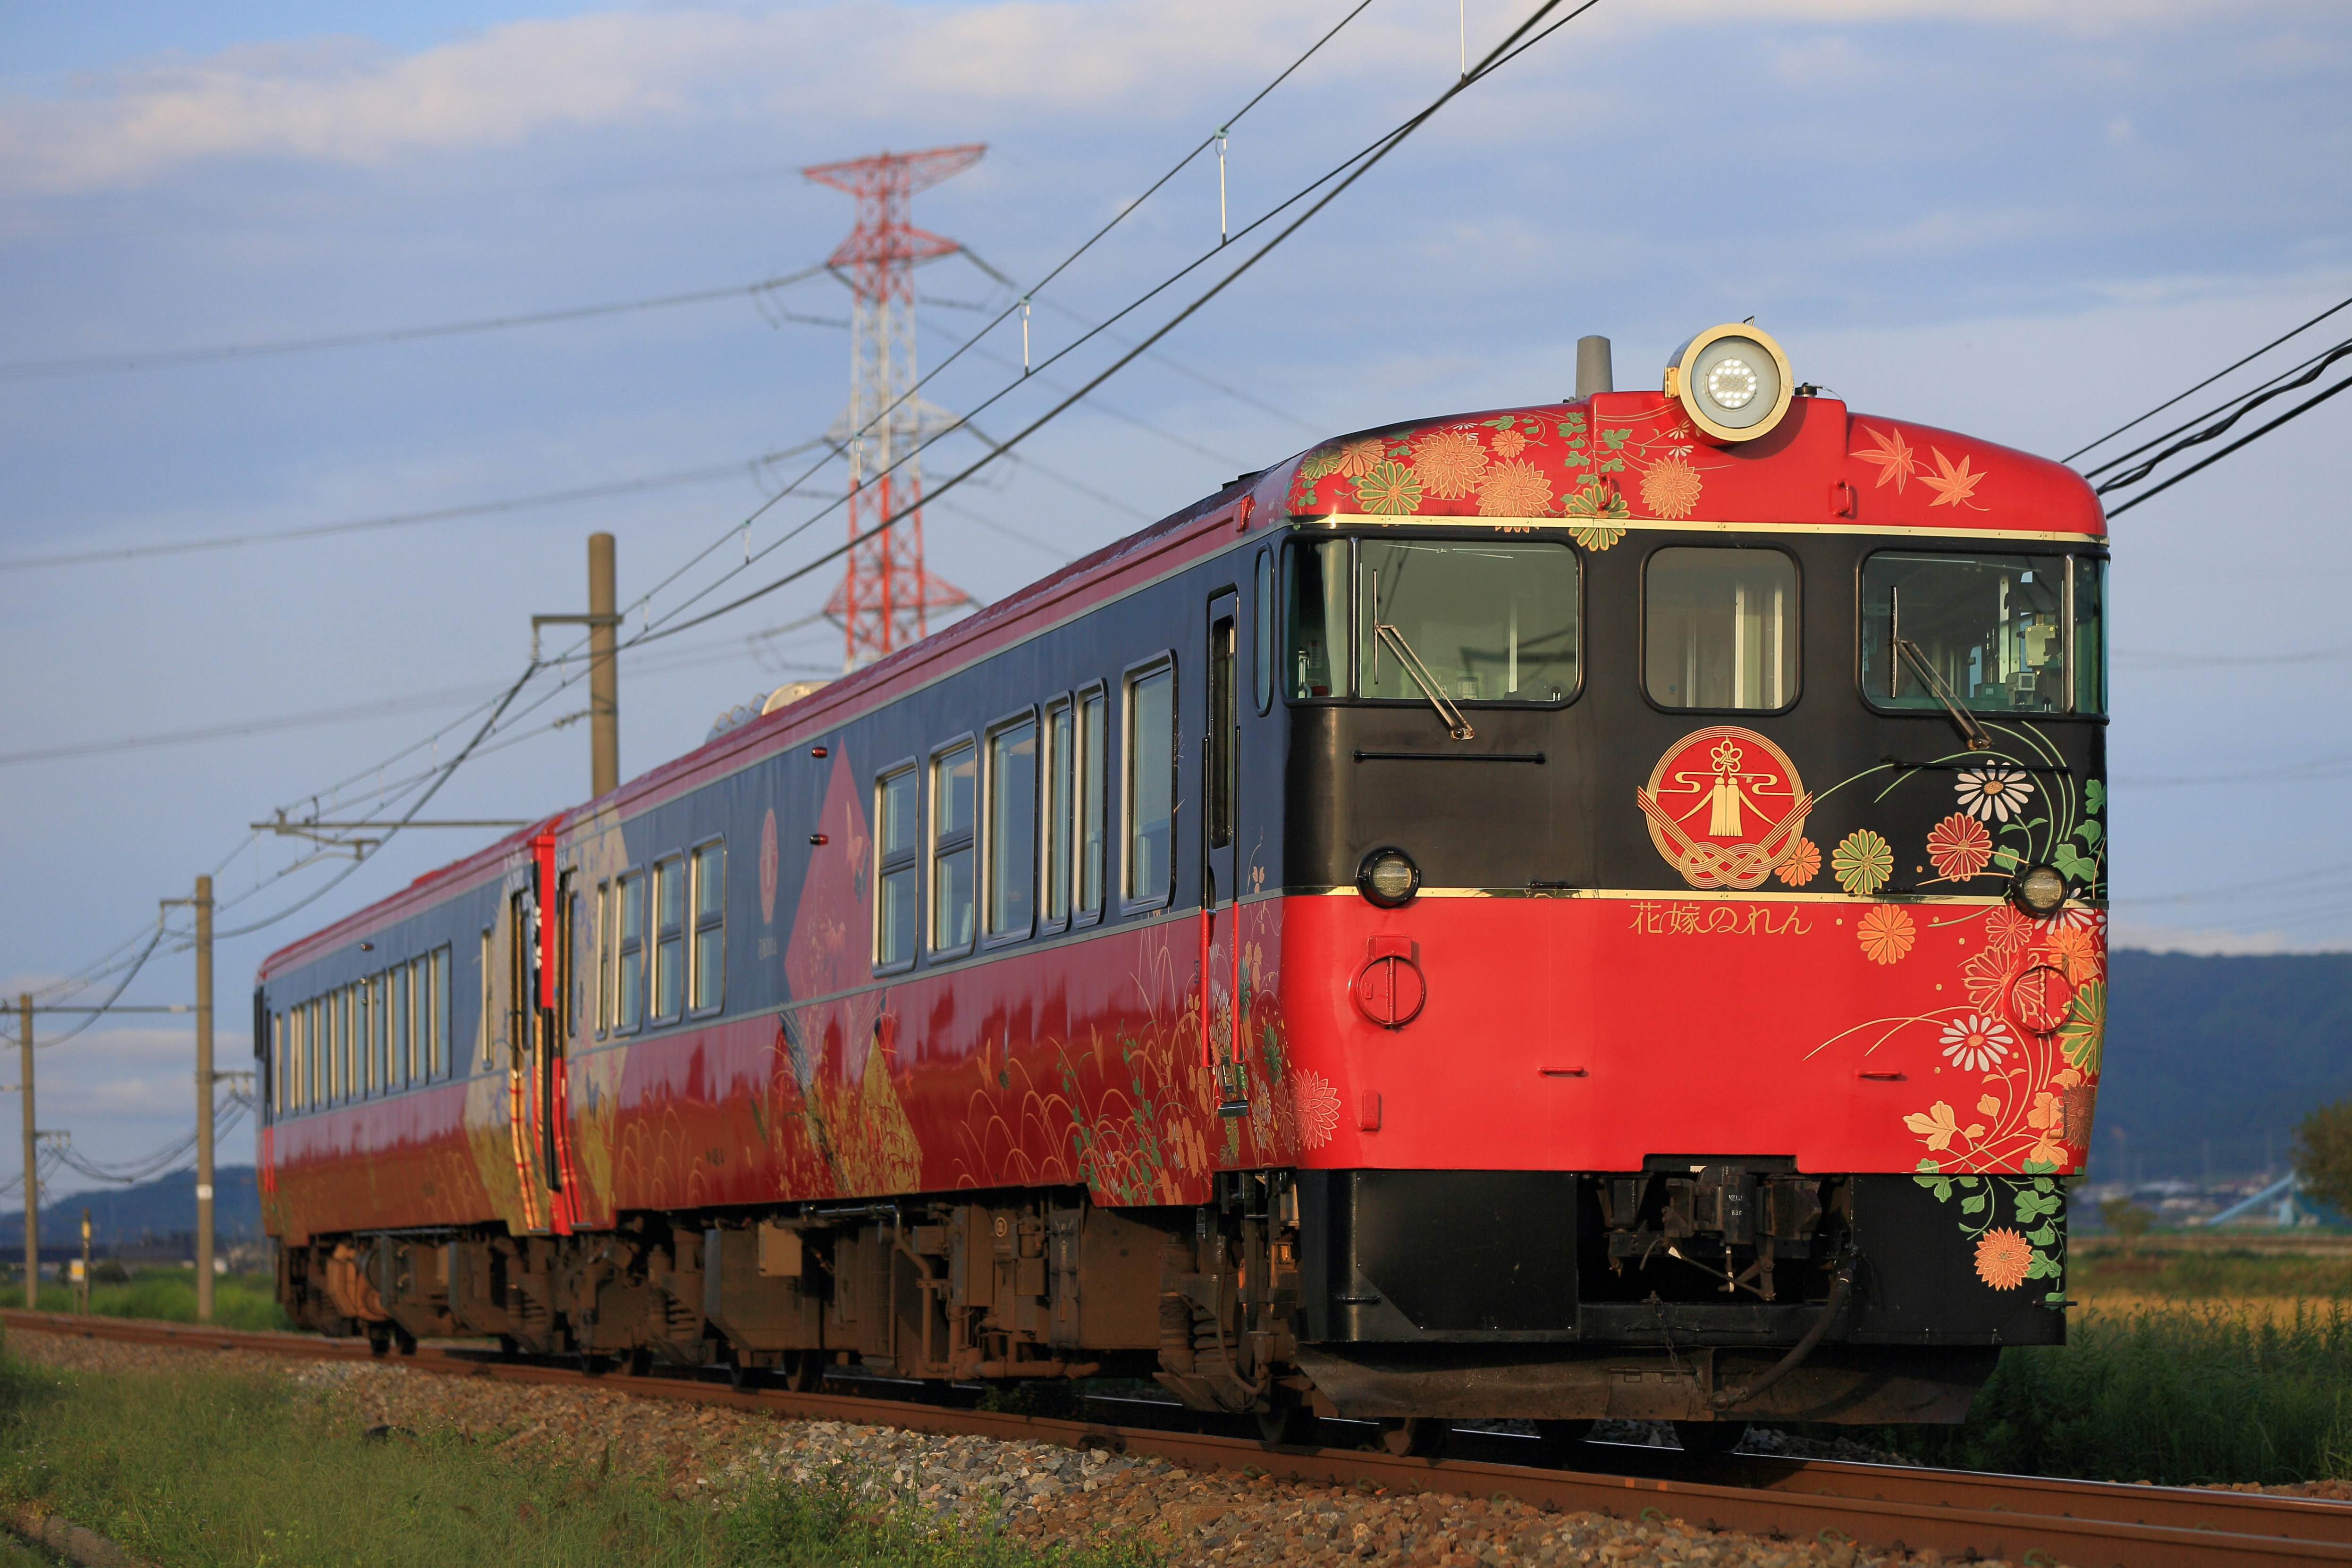 Ett rött tåg går längs spår genom den japanska landsbygden.  Gröna fält är synliga bortom den.